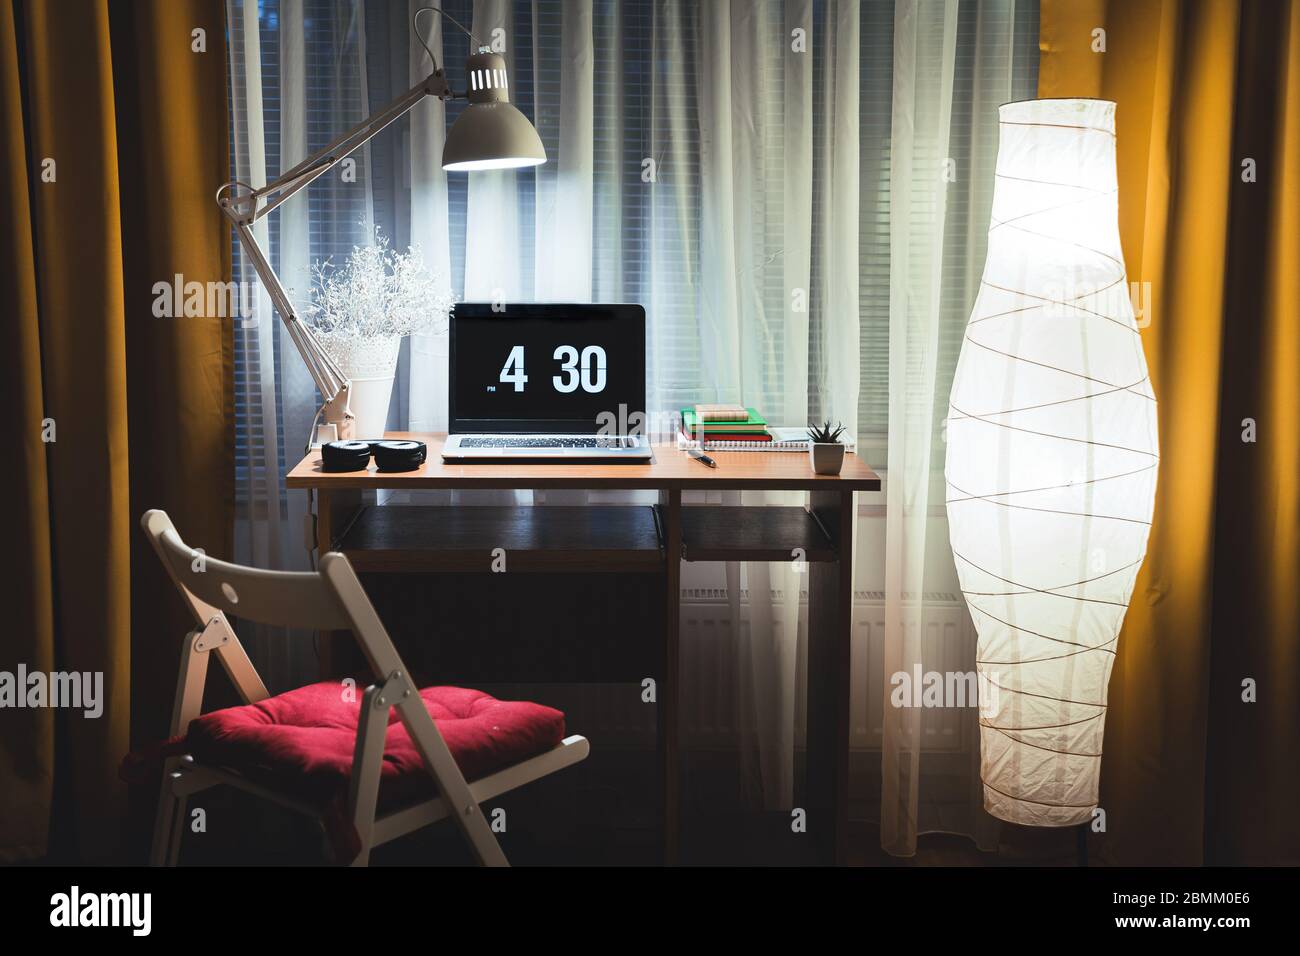 Moderne Abendinterieur des Wohnzimmers mit kleinem Schreibtisch und  Stehlampe gegen Fenster. Laptop auf dem Tisch bereit, spät in der Nacht  Arbeit Überstunden zu beginnen Stockfotografie - Alamy